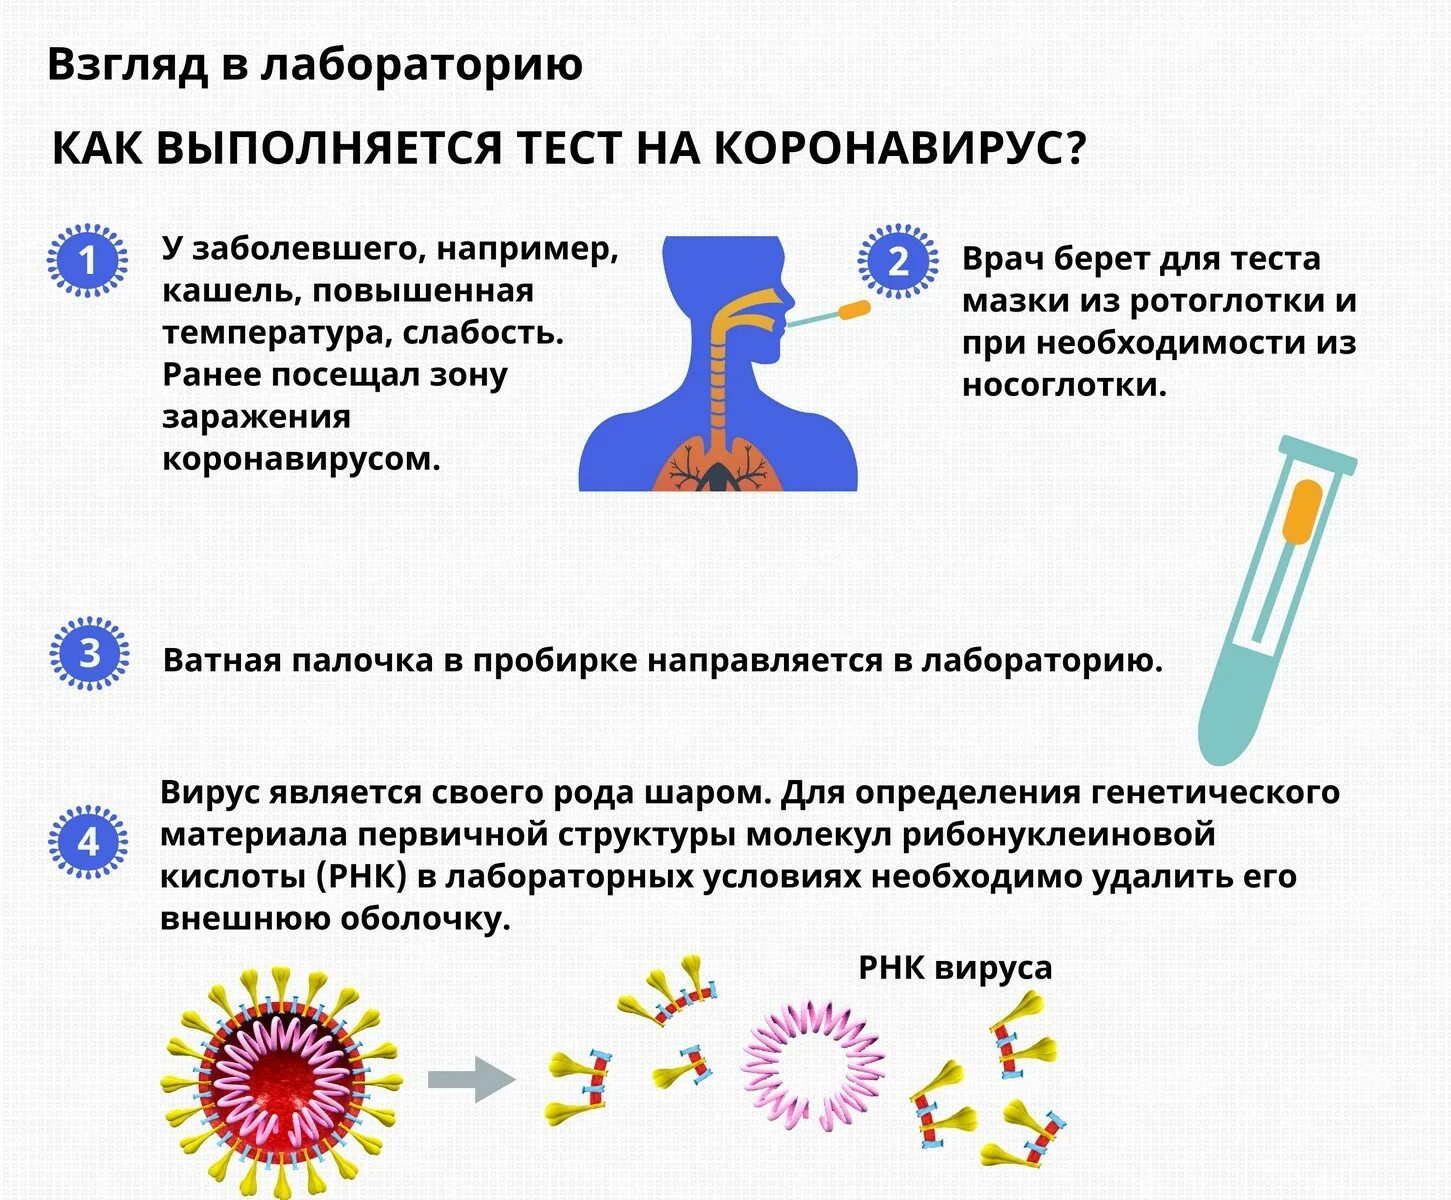 Вопросы для тестов коронавирусной инфекции. Тесть на картона виррус. Тест на коронавирус. Как делают тест на коронавирус. Какие есть тесты на коронавирус.